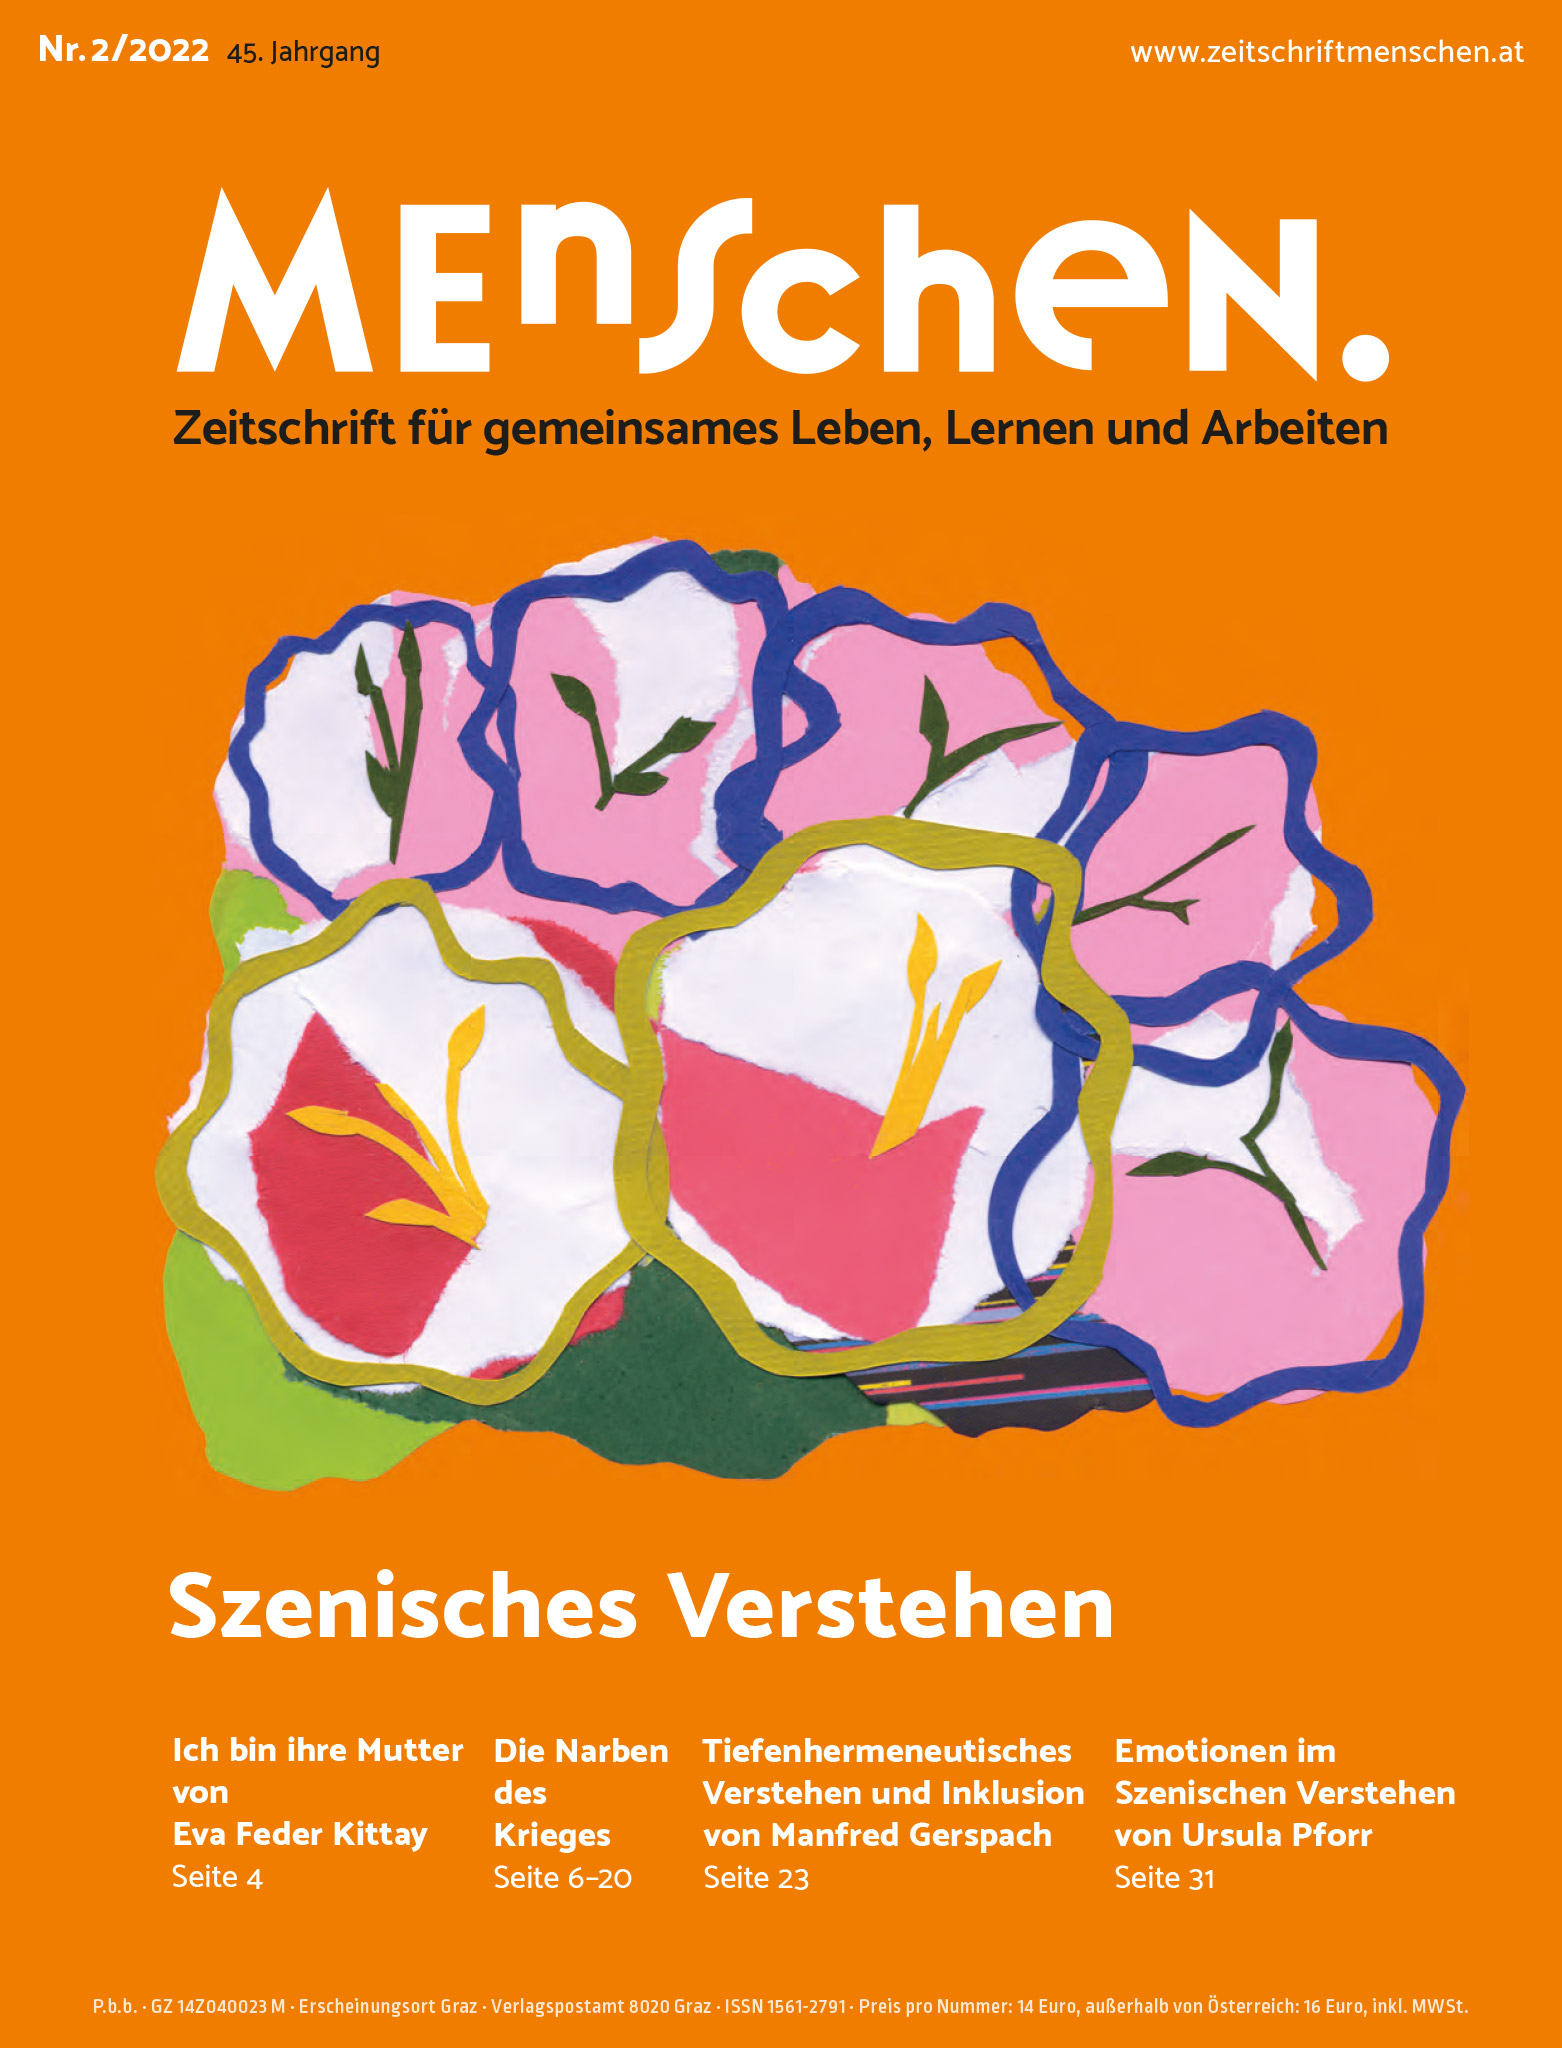 Titelbild der Zeitschrift BEHINDERTE MENSCHEN, Ausgabe 2/2022 "Szenisches Verstehen"